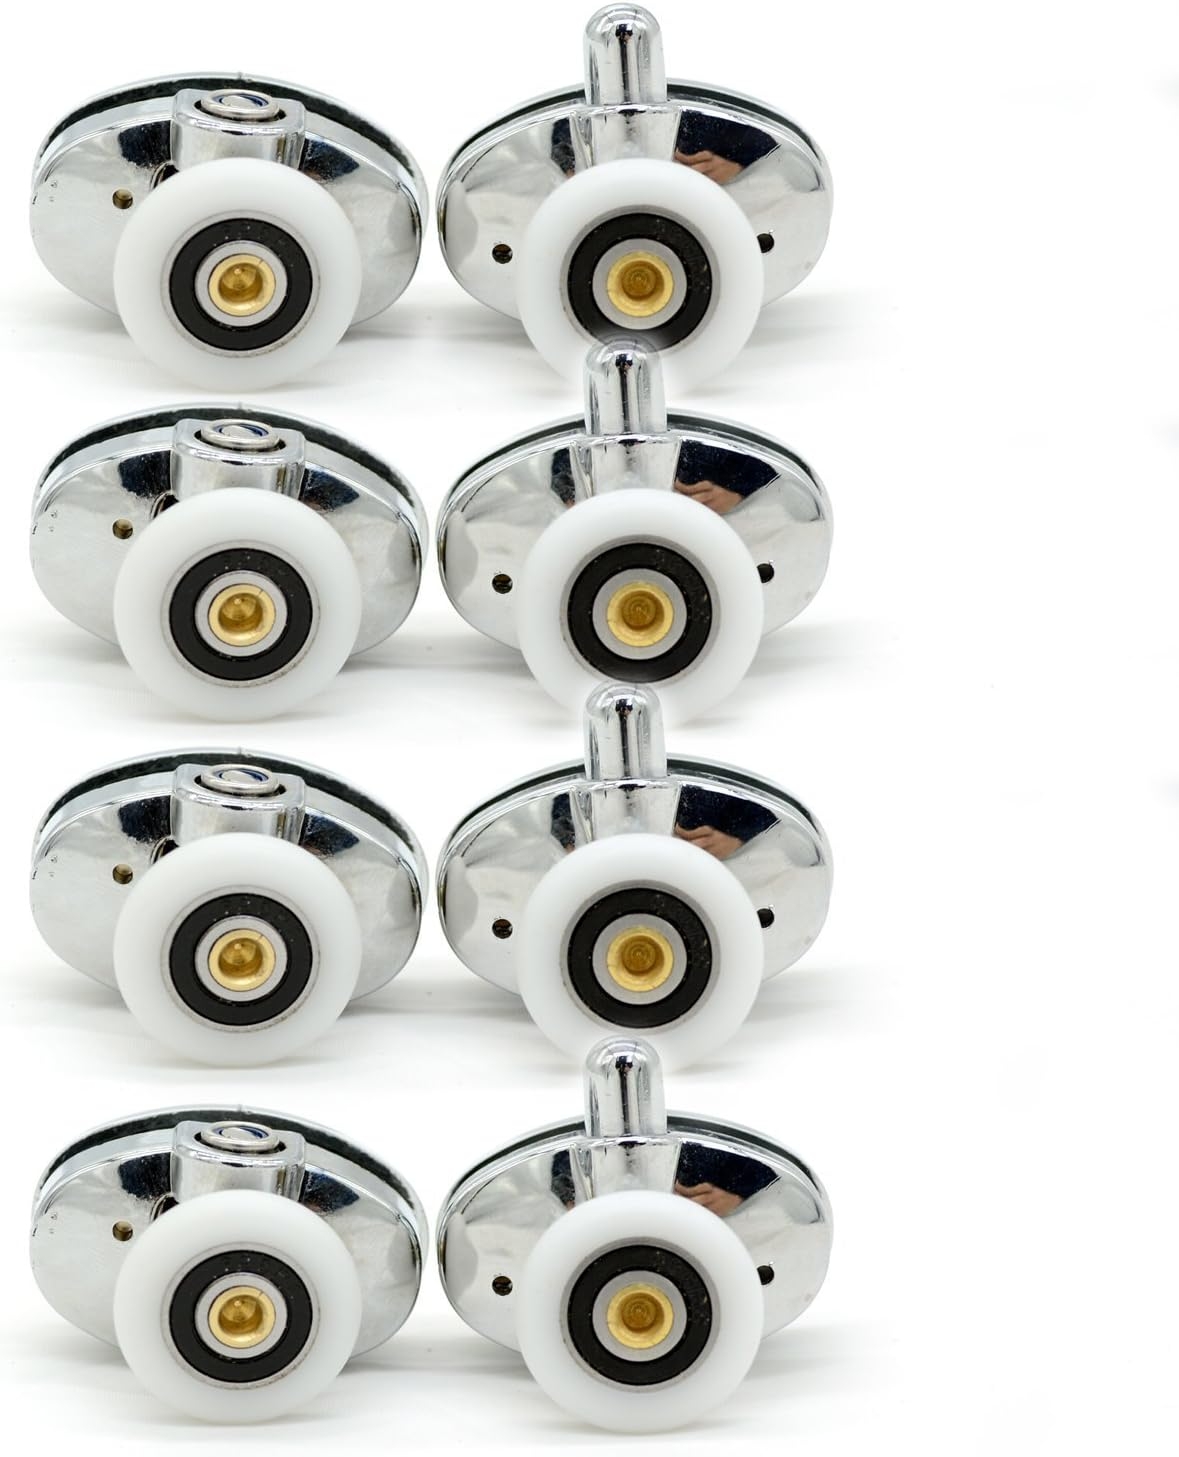 Set of 8 new Oval butterfly single wheel Shower door rollers 23mm